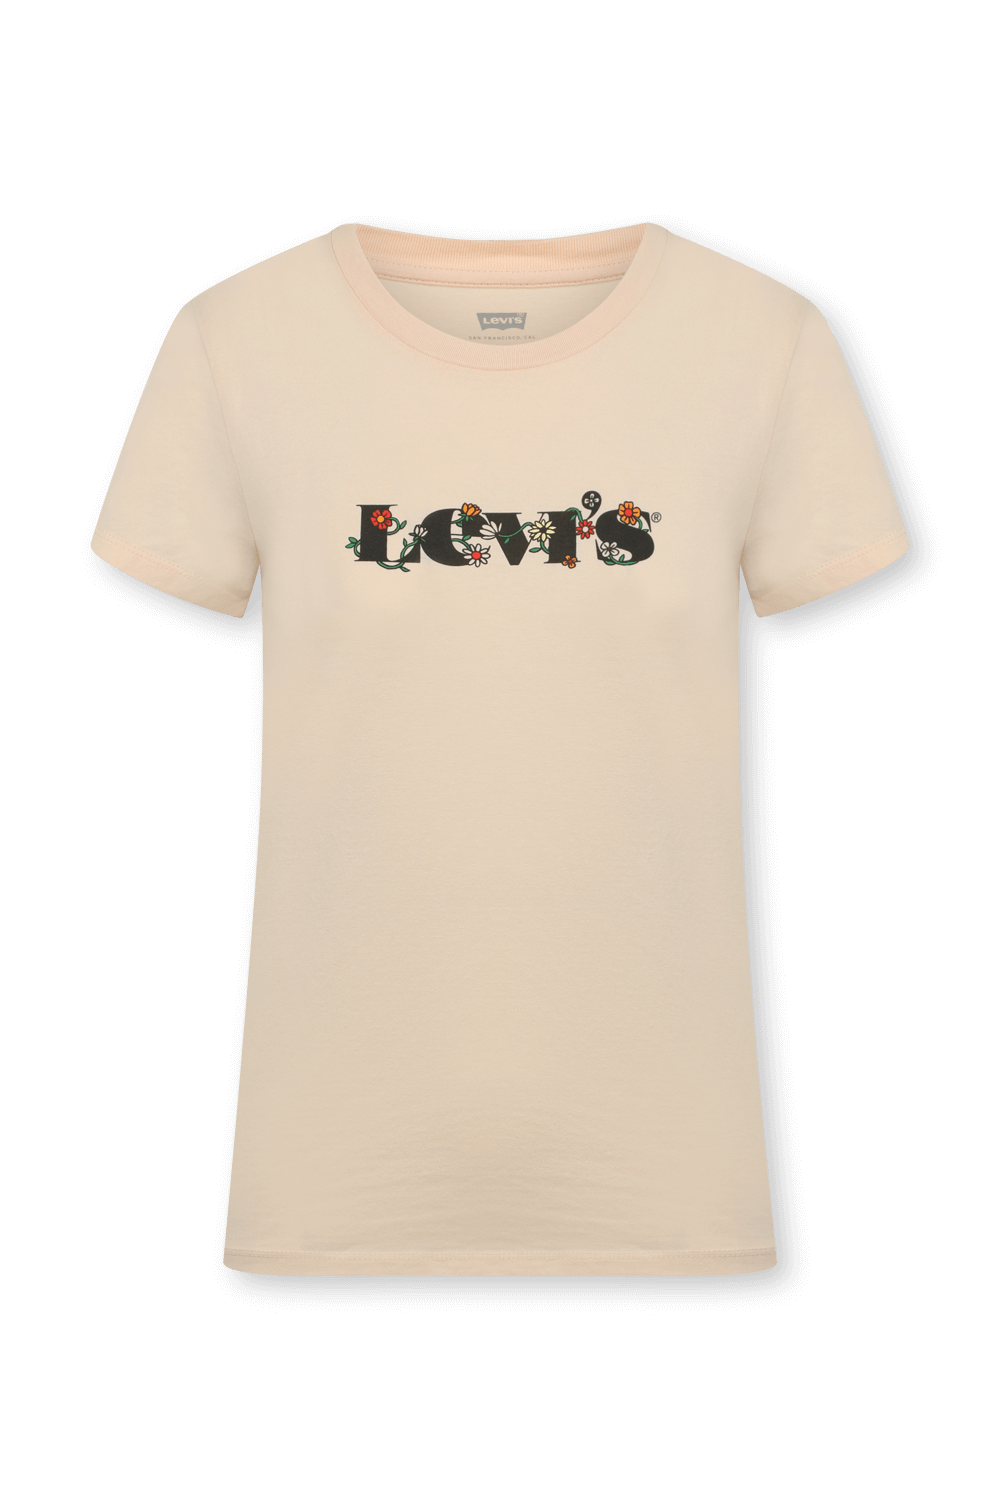 חולצת לוגו אפרסק LEVI`S